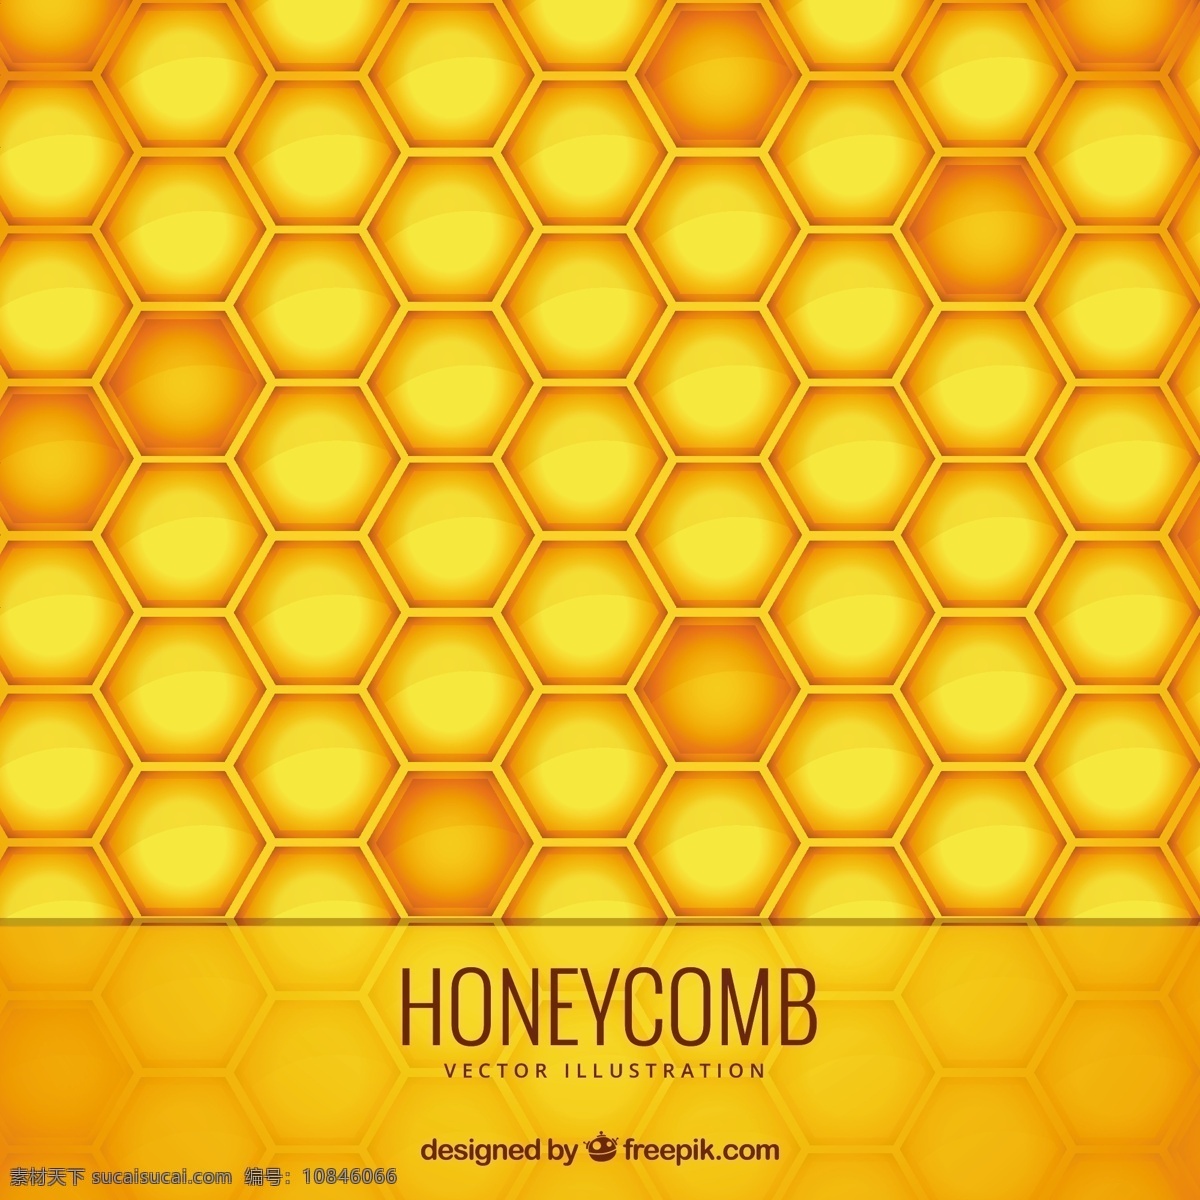 蜂窝背景 背景 抽象 几何 自然 蜂蜜 黄色 蜂巢 性质 六角形 六边形